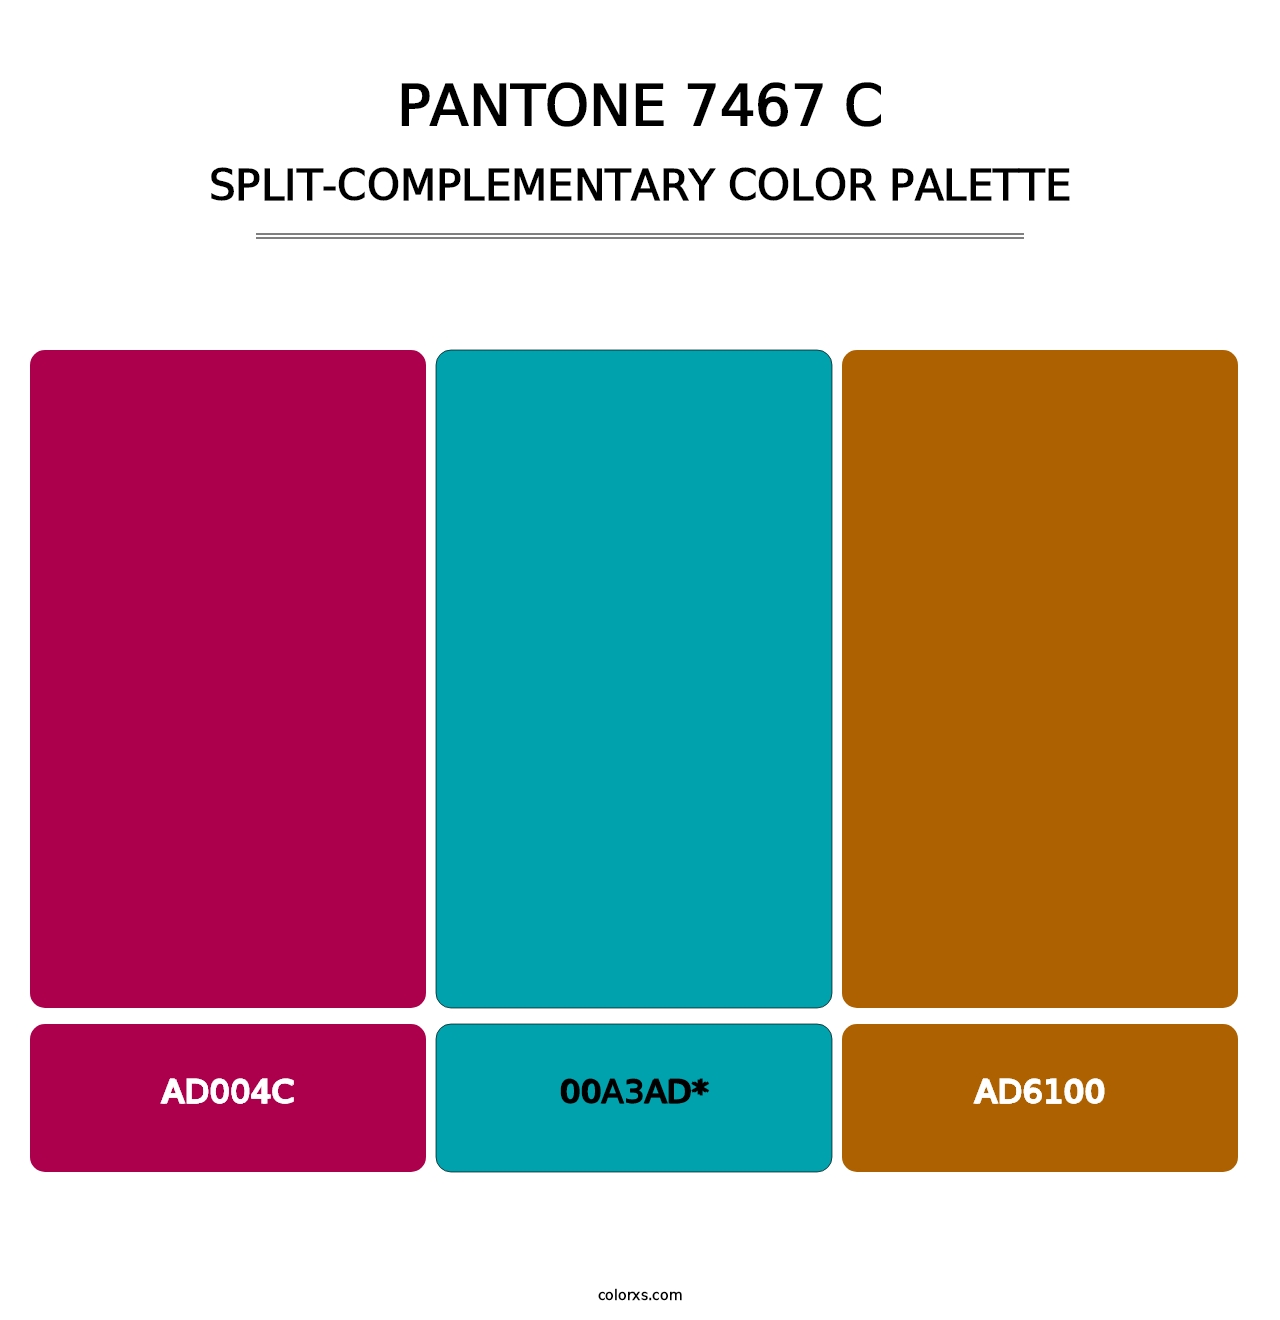 PANTONE 7467 C - Split-Complementary Color Palette